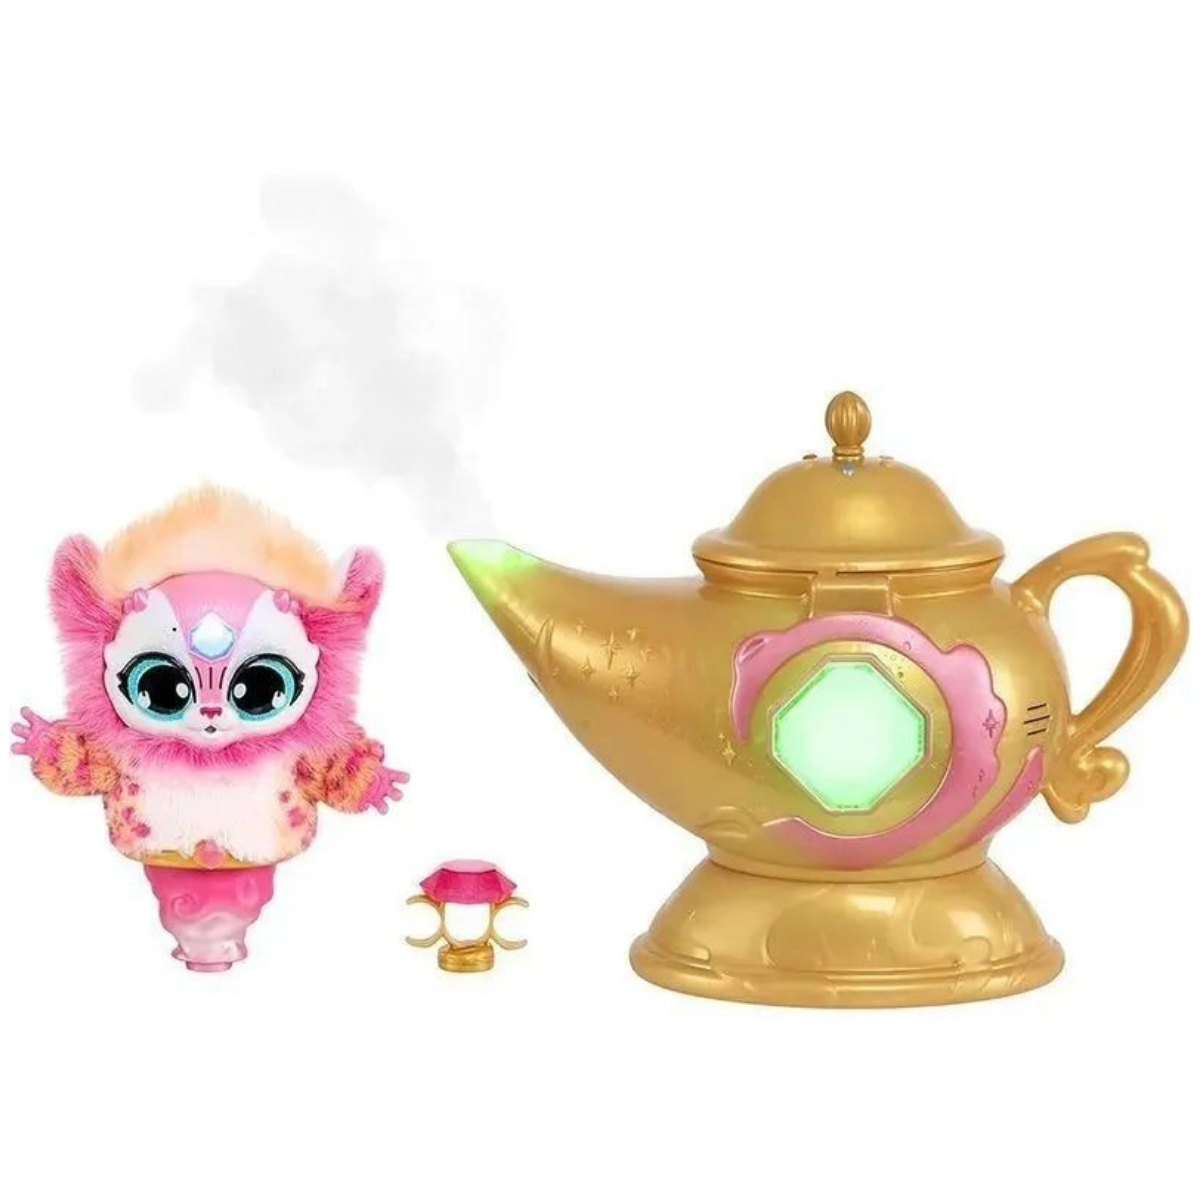 Интерактивная игрушка Интерактивная игрушка Magic Mixies Genie Lamp Волшебная лампа Розовая